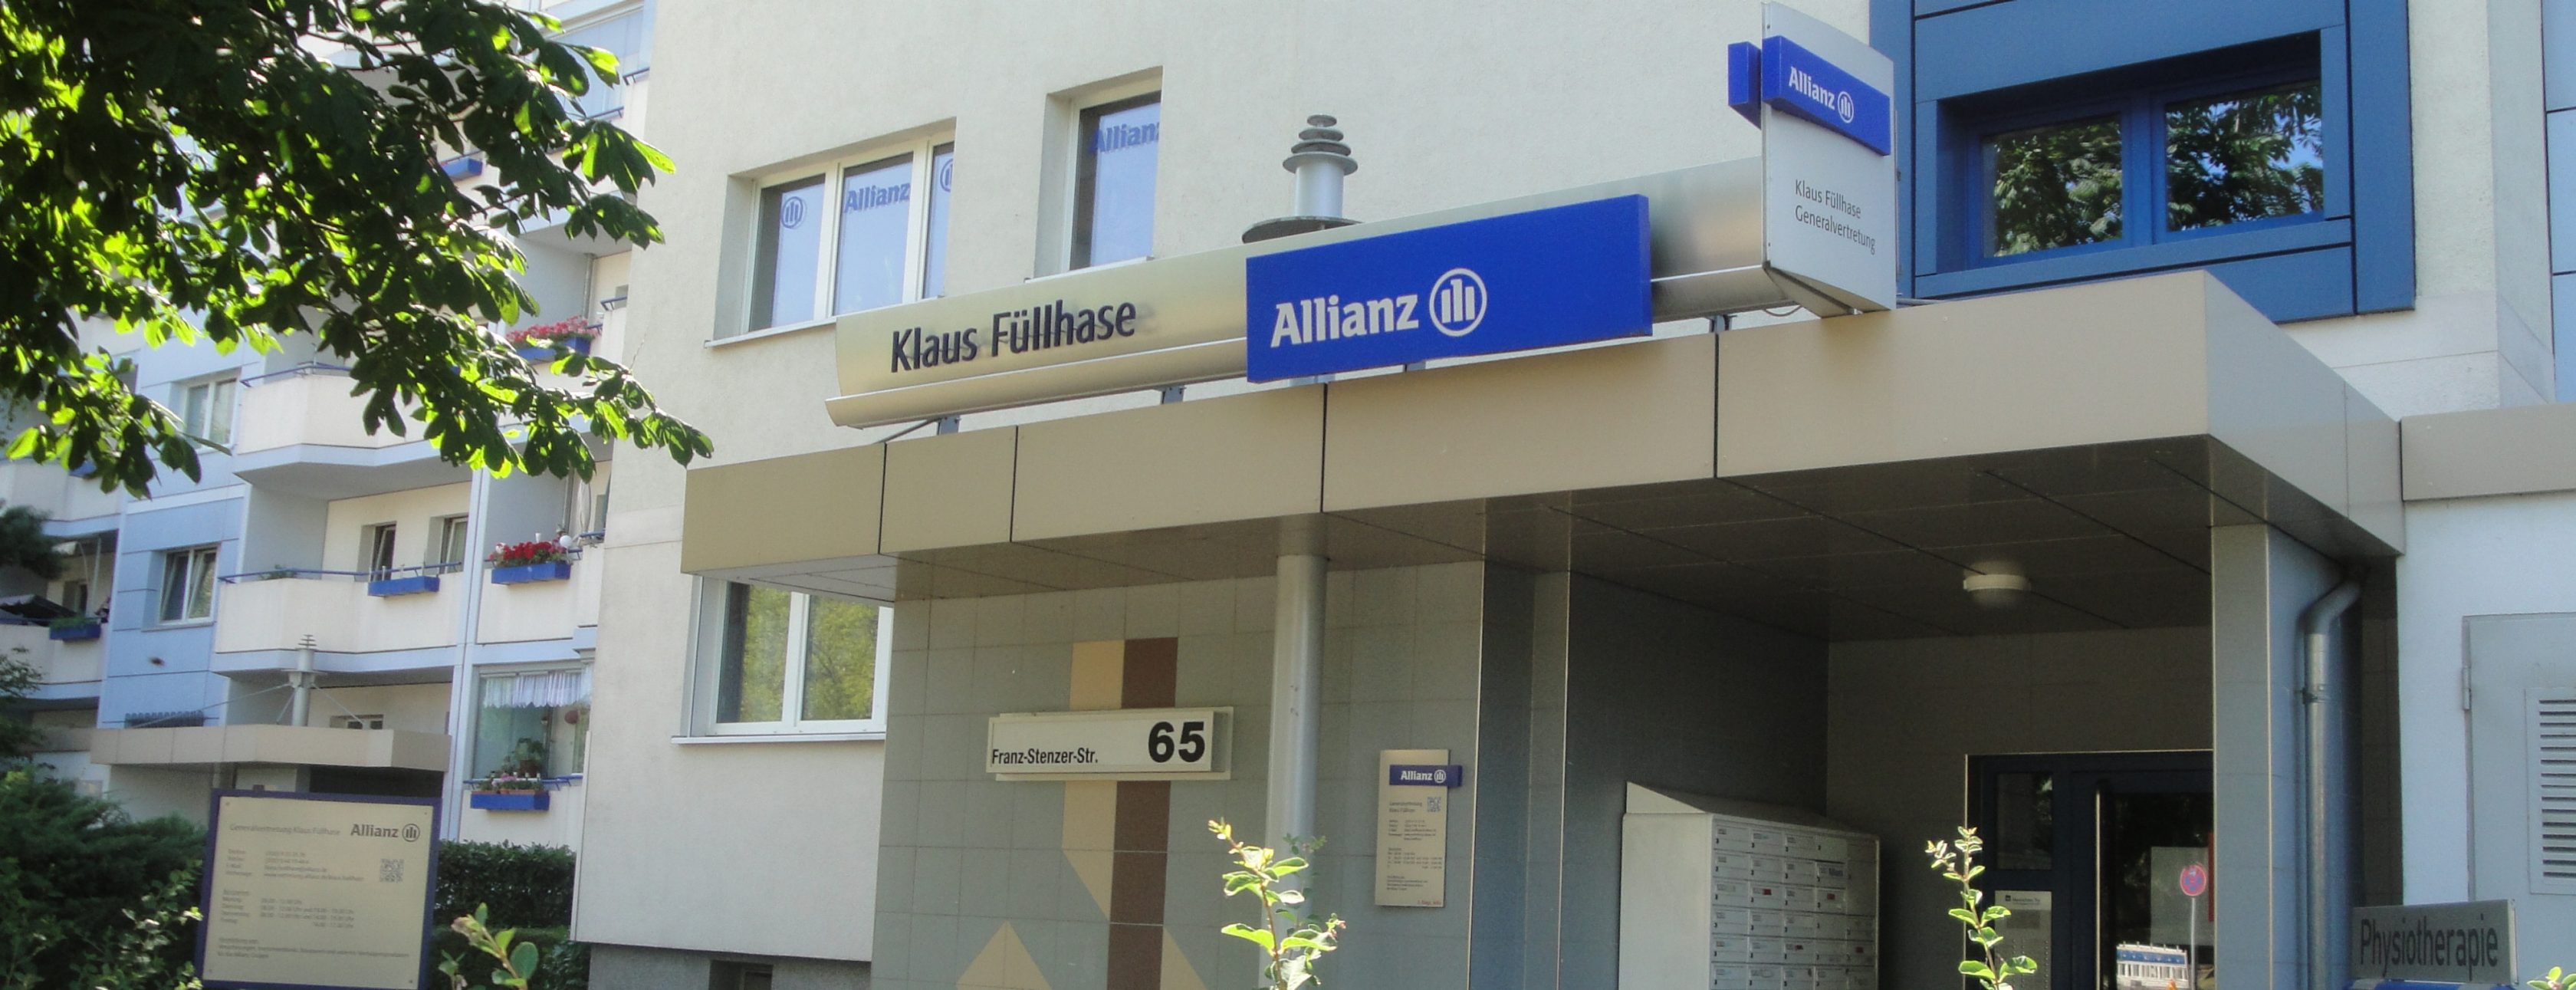 Allianz Versicherung Klaus Füllhase Berlin - Allianz Generalvertretung Klaus Füllhase